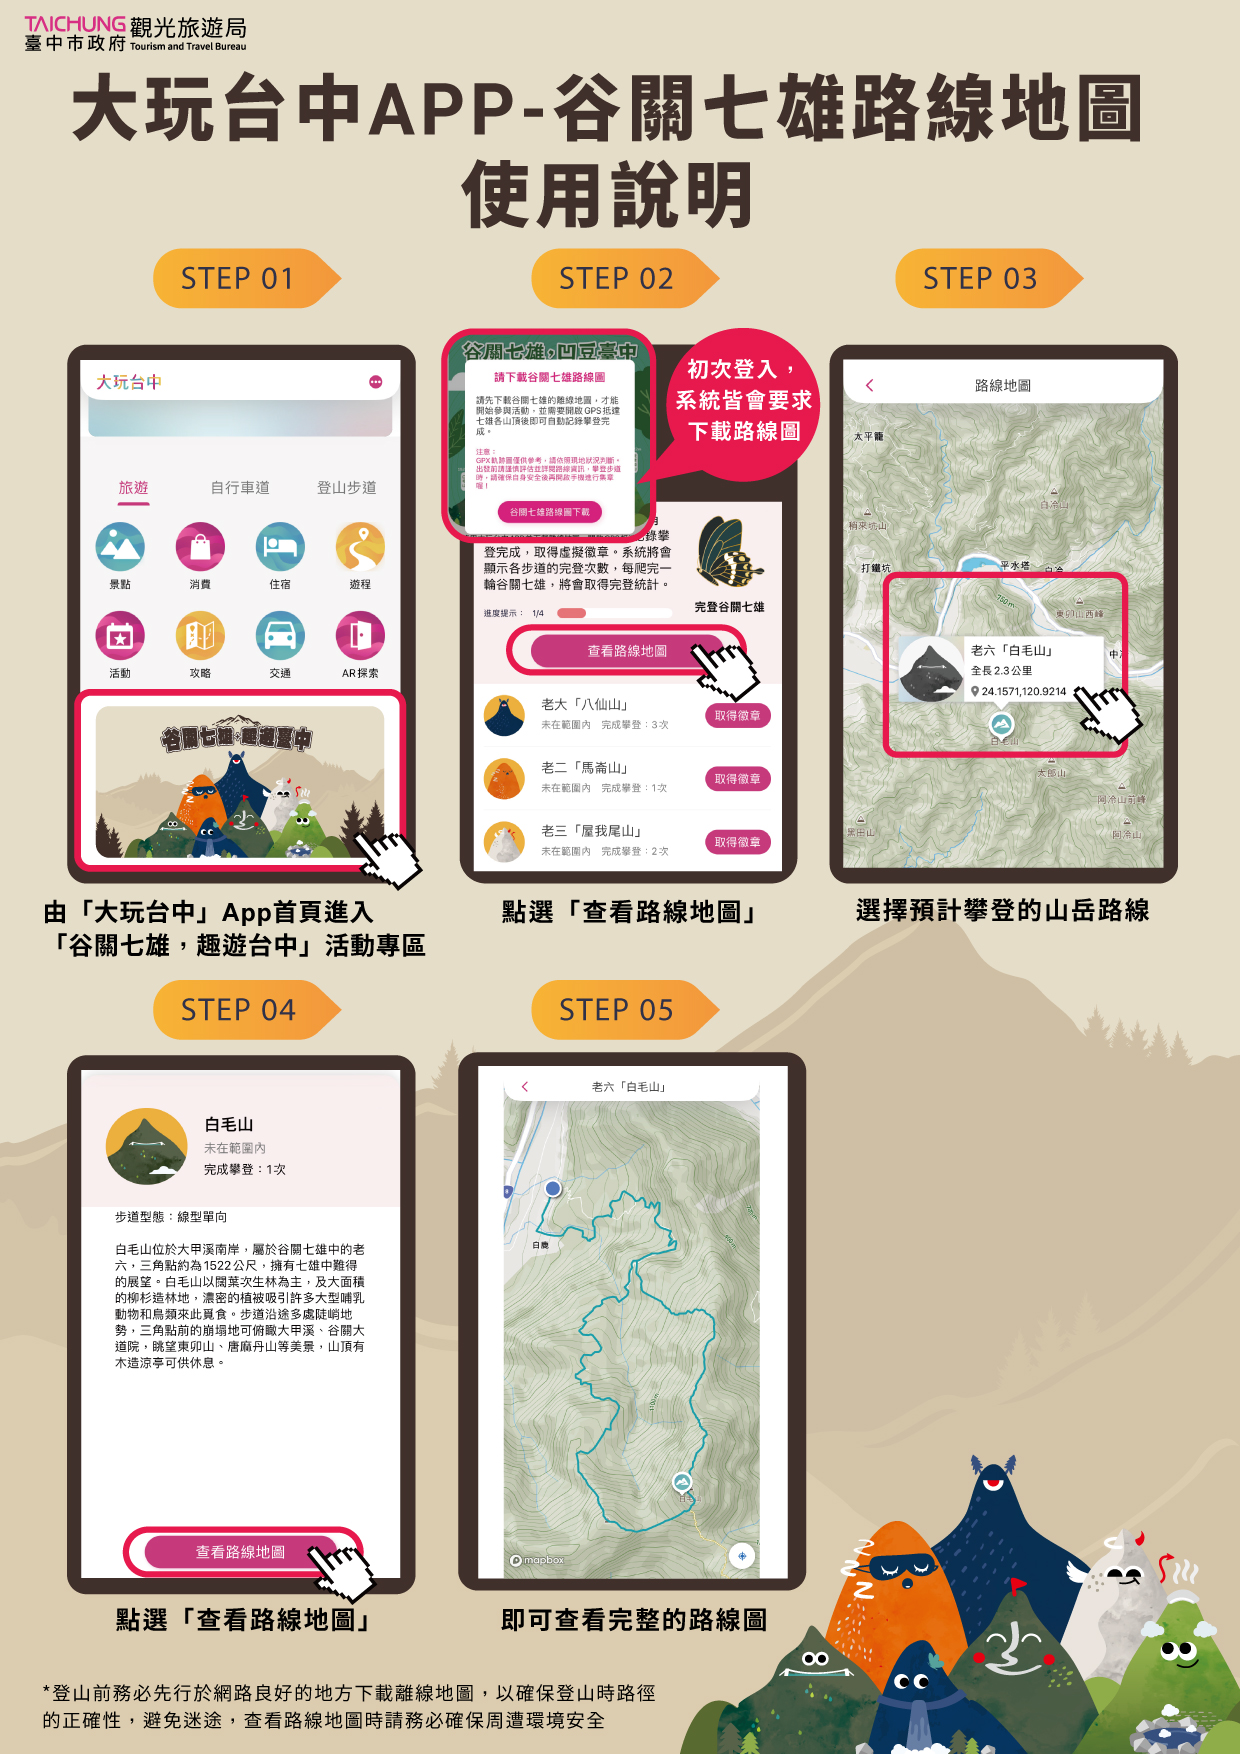 大玩台中app-谷關七雄路線地圖使用說明.jpg